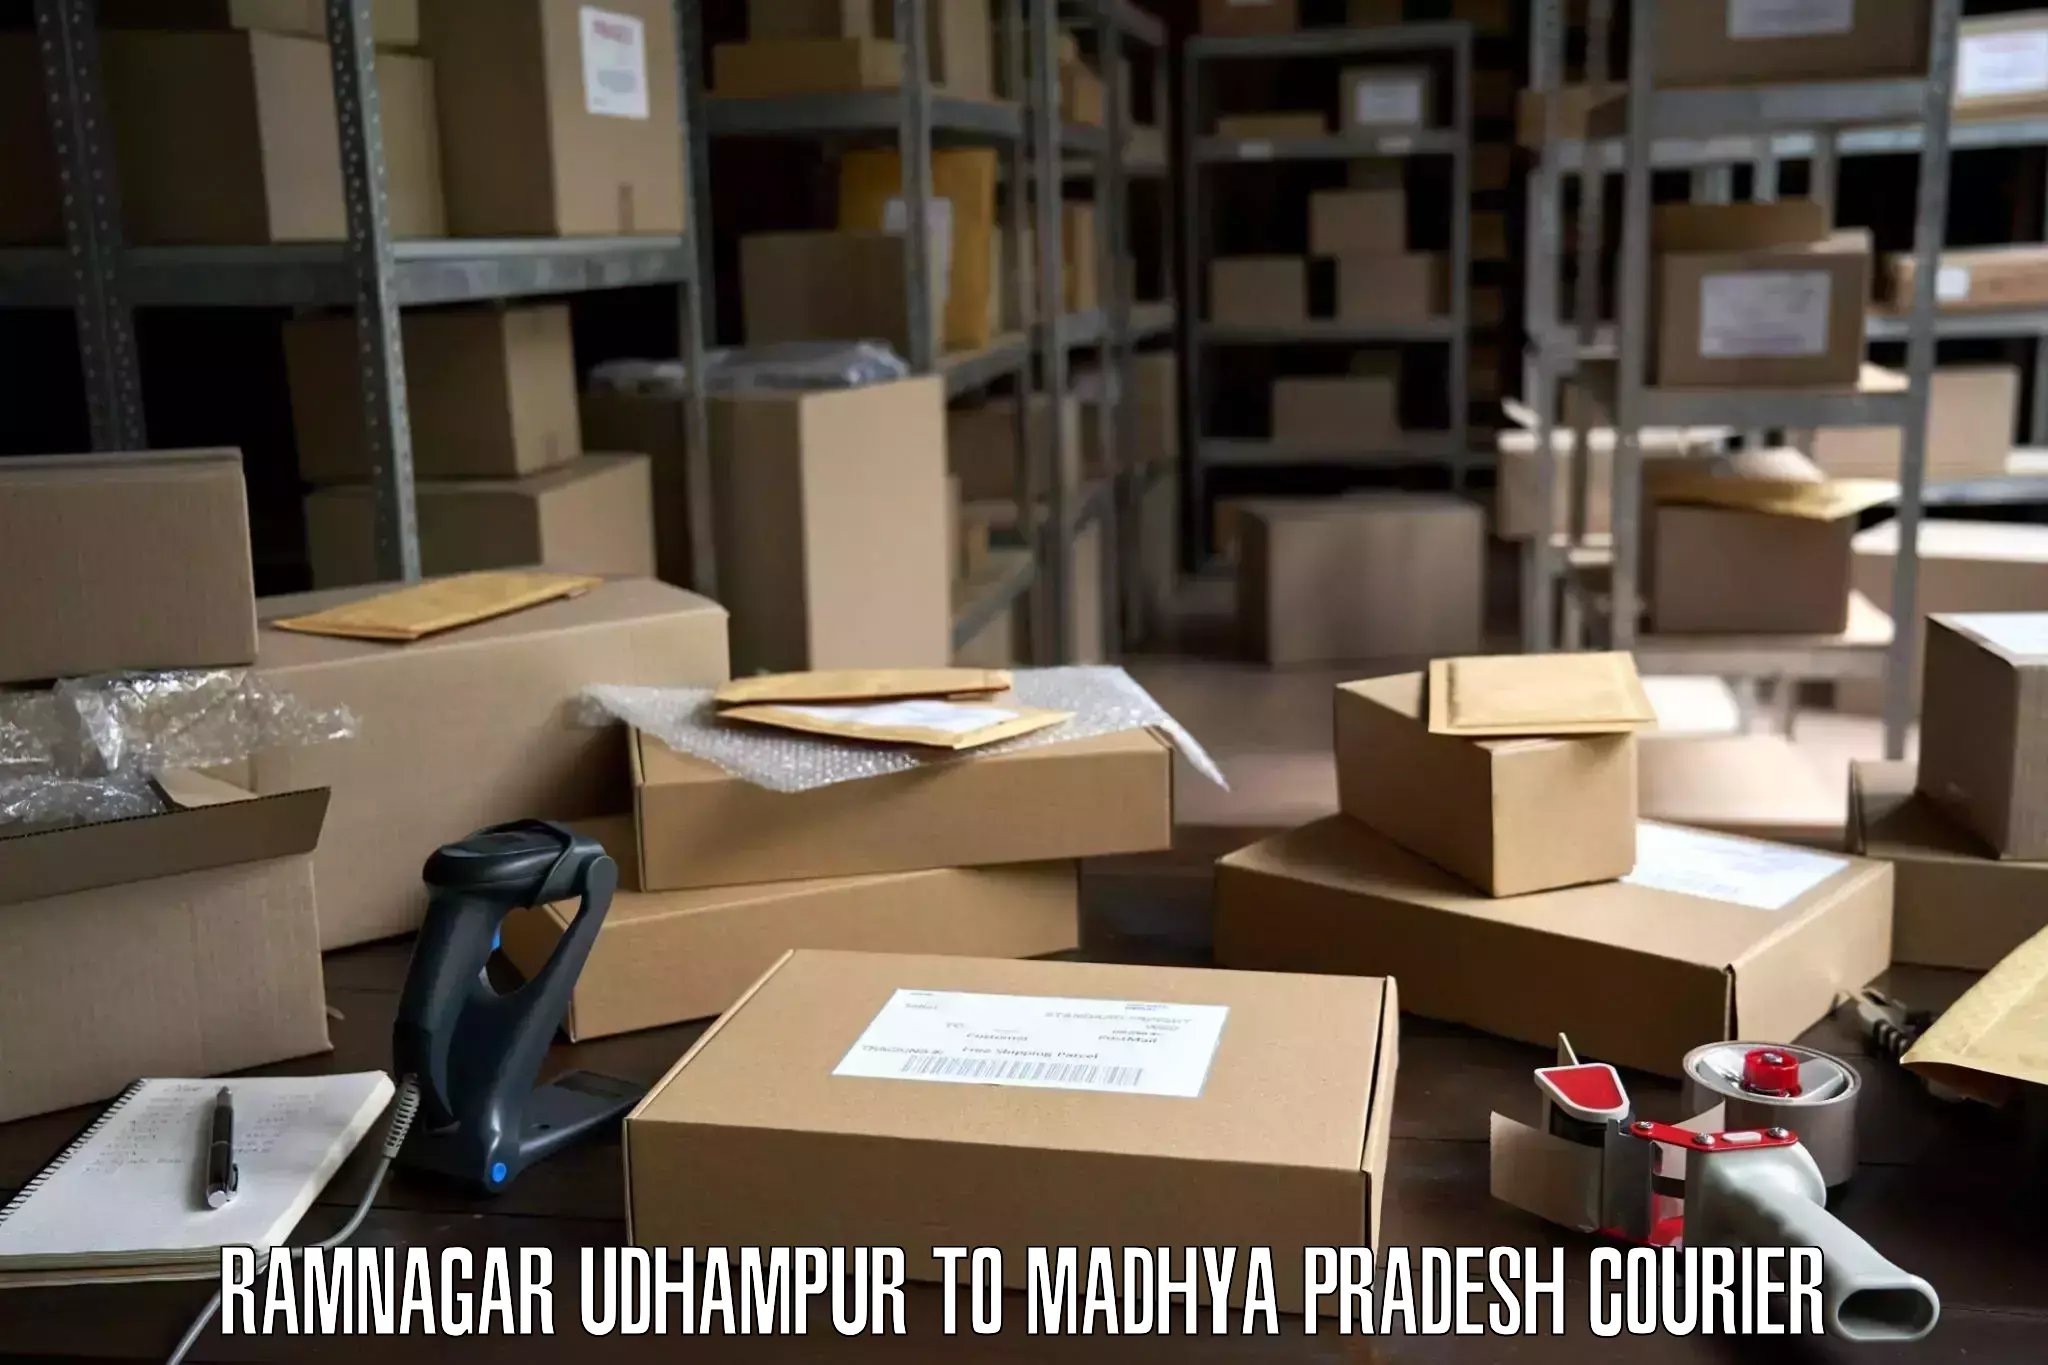 Budget-friendly movers Ramnagar Udhampur to Seoni Malwa